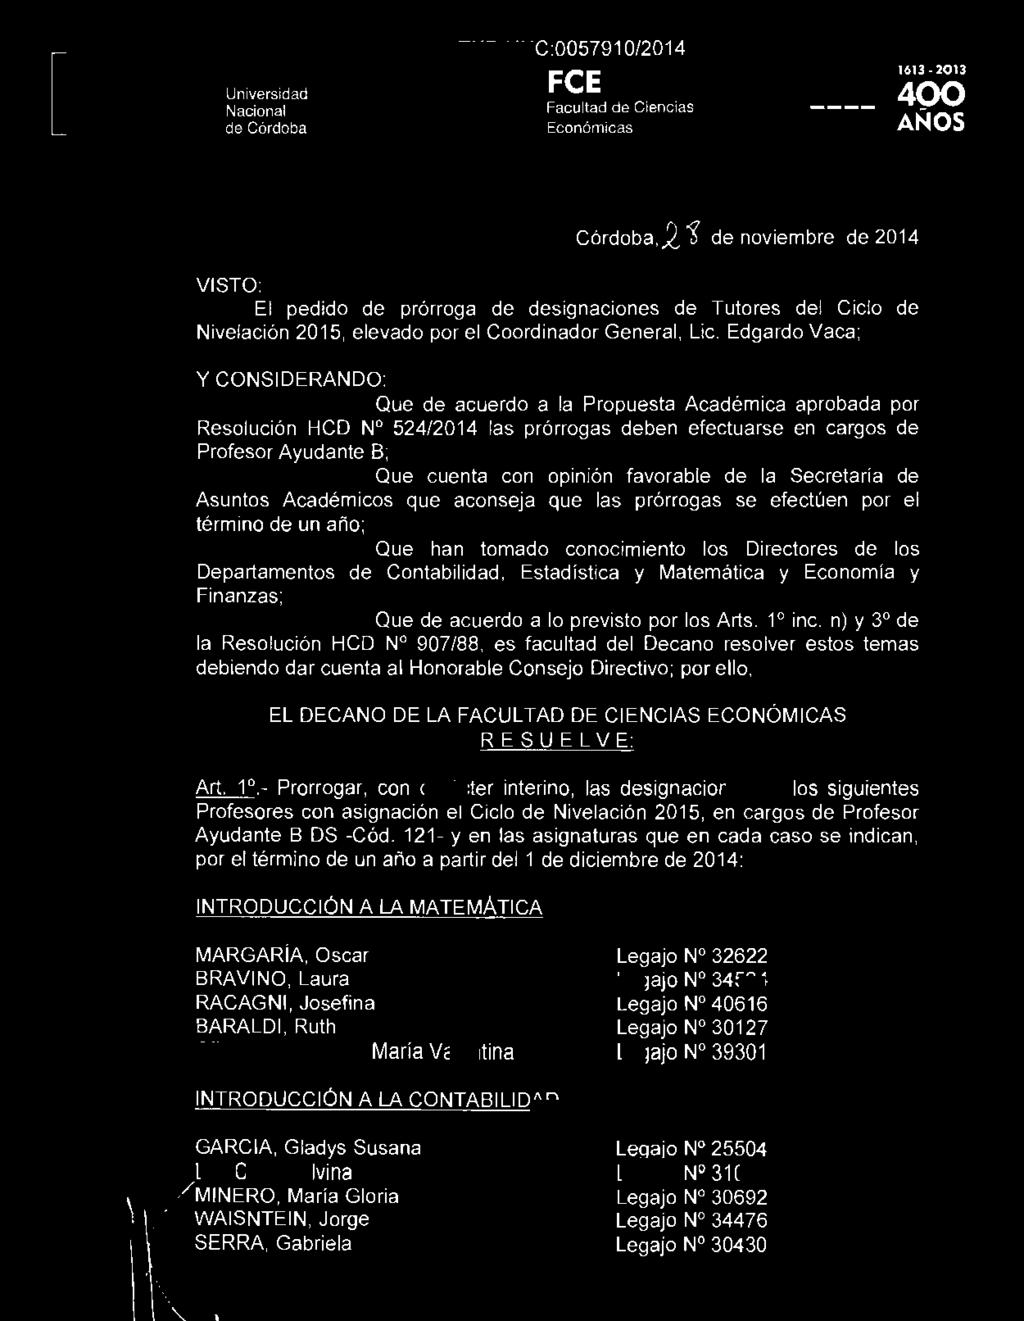 ......,NC:005791 0/2014 1613-2013 Córdoba.21 de noviembre de 2014 Nivelación 2015, elevado por el Coord inador General, Lic.